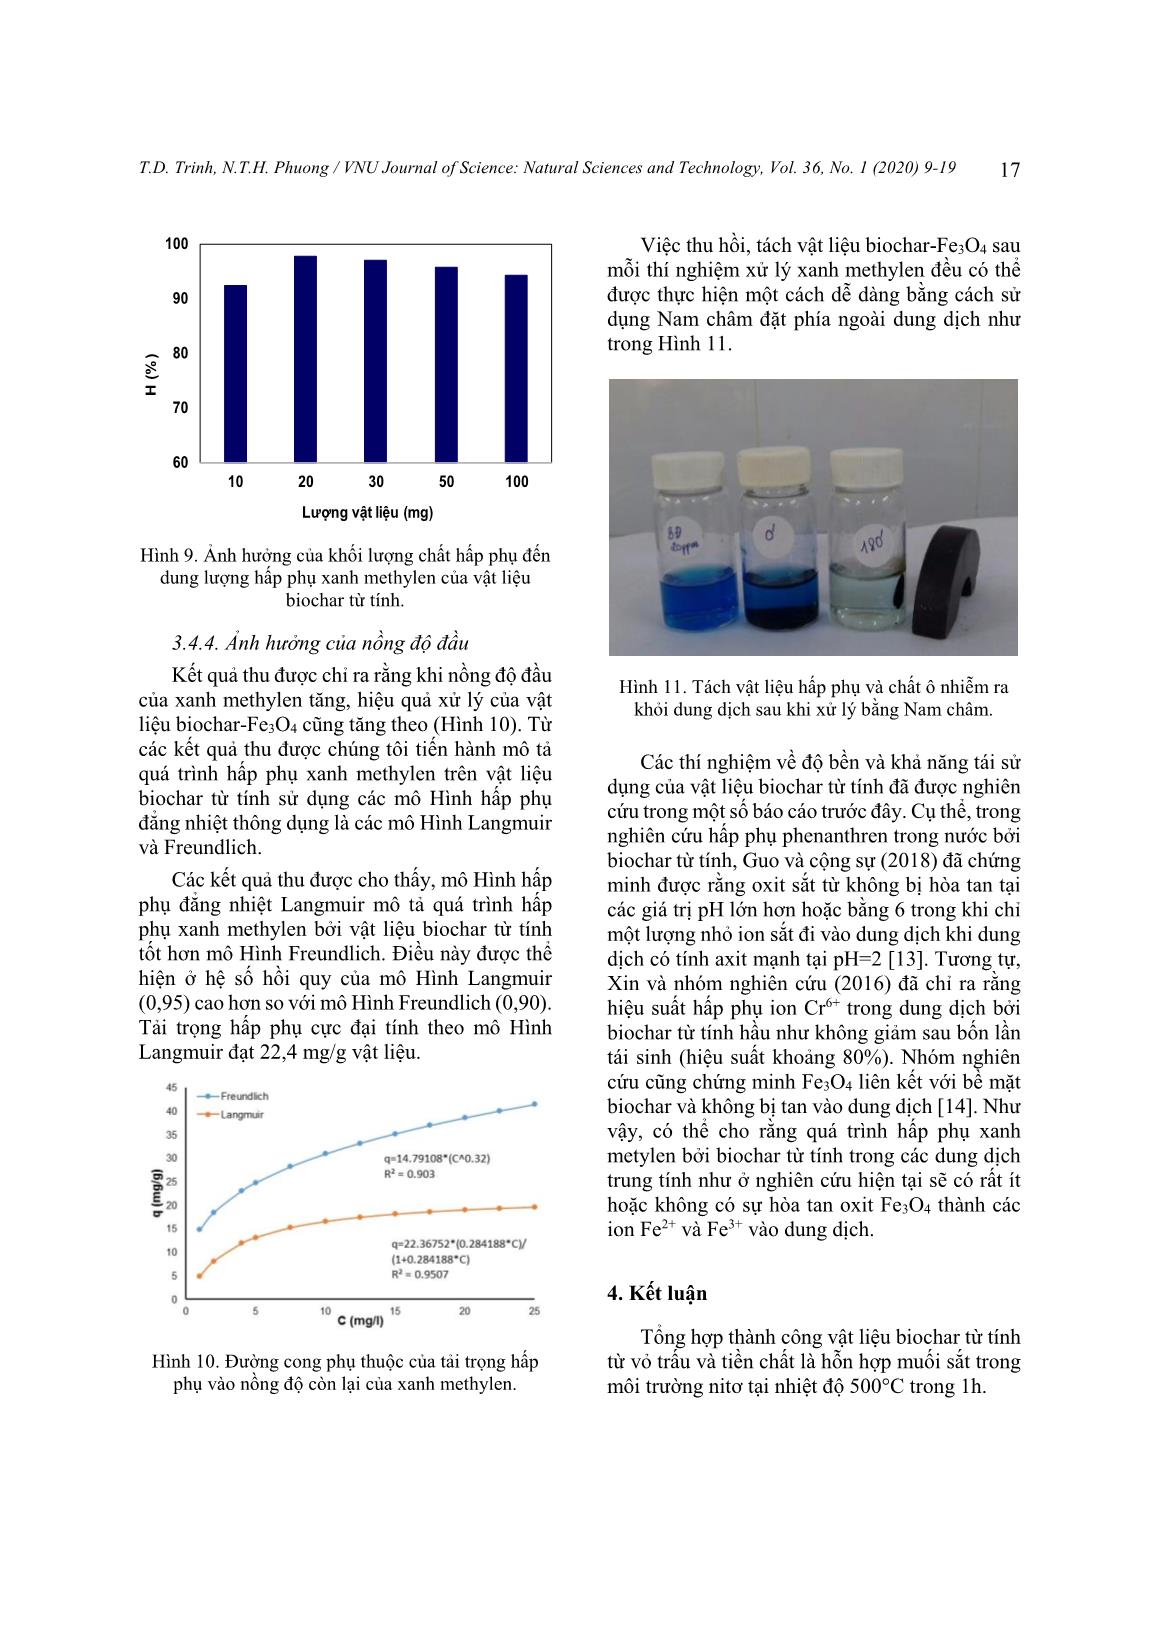 Nghiên cứu tổng hợp vật liệu biochar từ tính và ứng dụng để xử lý xanh methylen trong nước trang 9